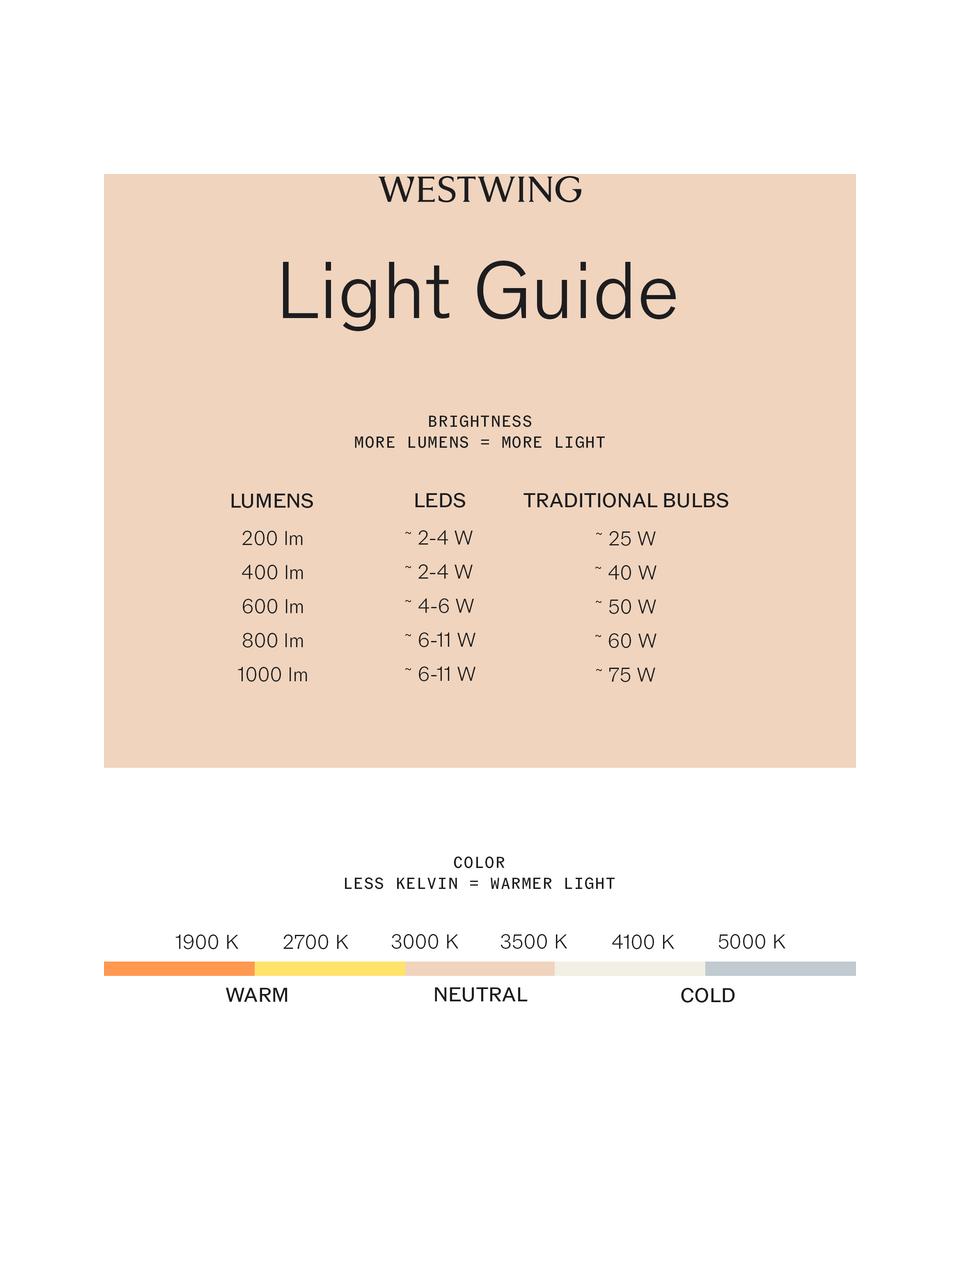 Kleine mobile LED-Aussentischlampe Ombrellino, dimmbar, Orange, Ø 16 x H 23 cm